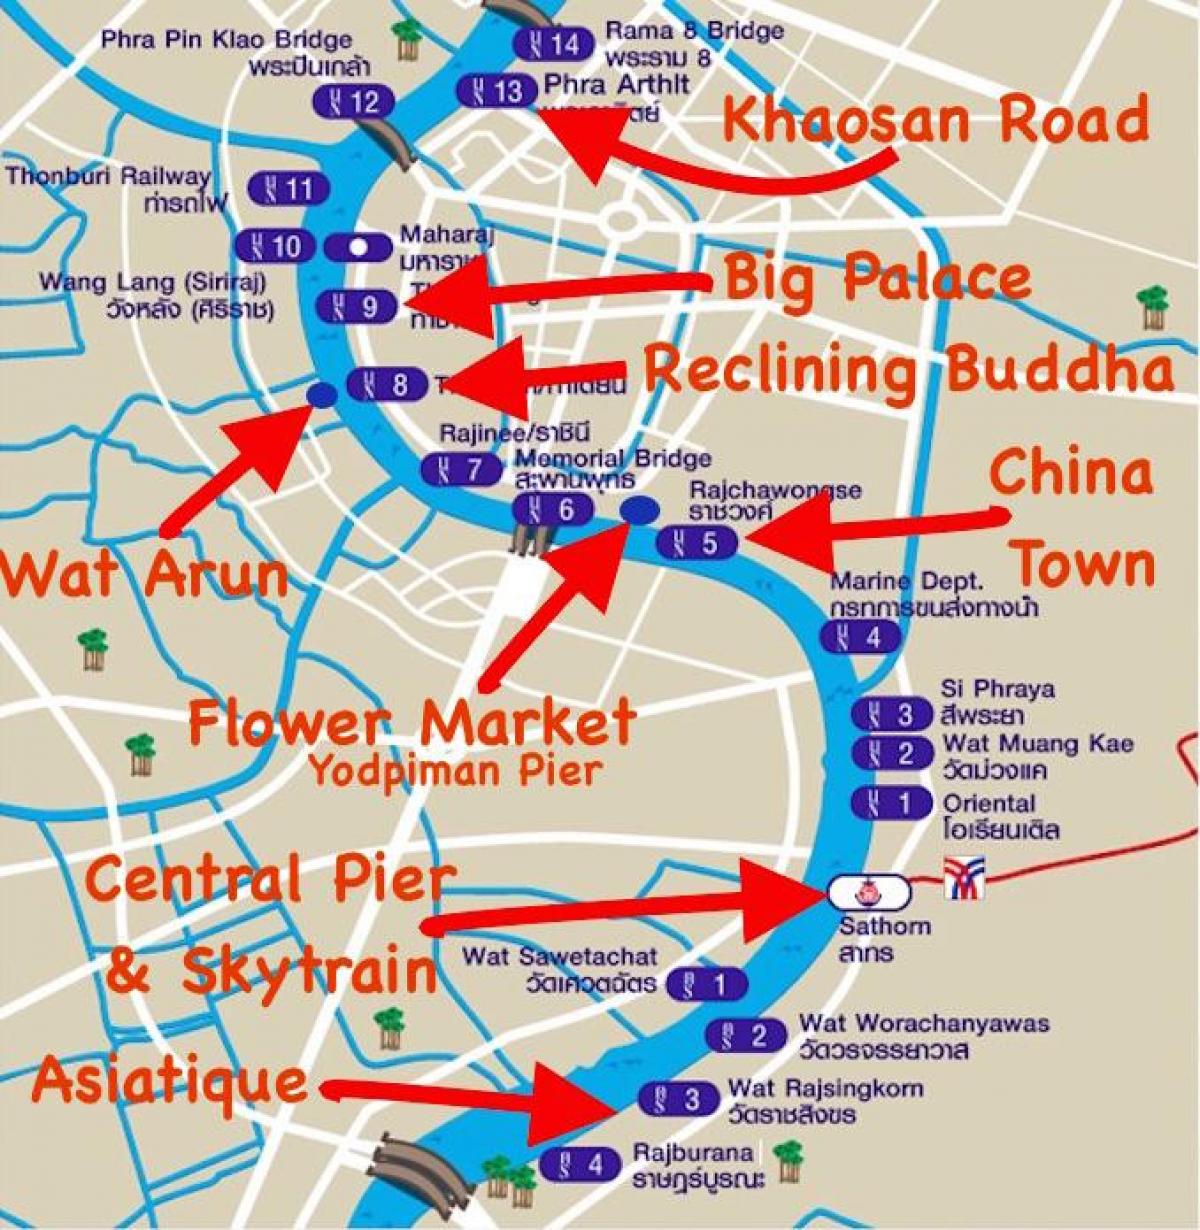 რუკა bangkok პიერ